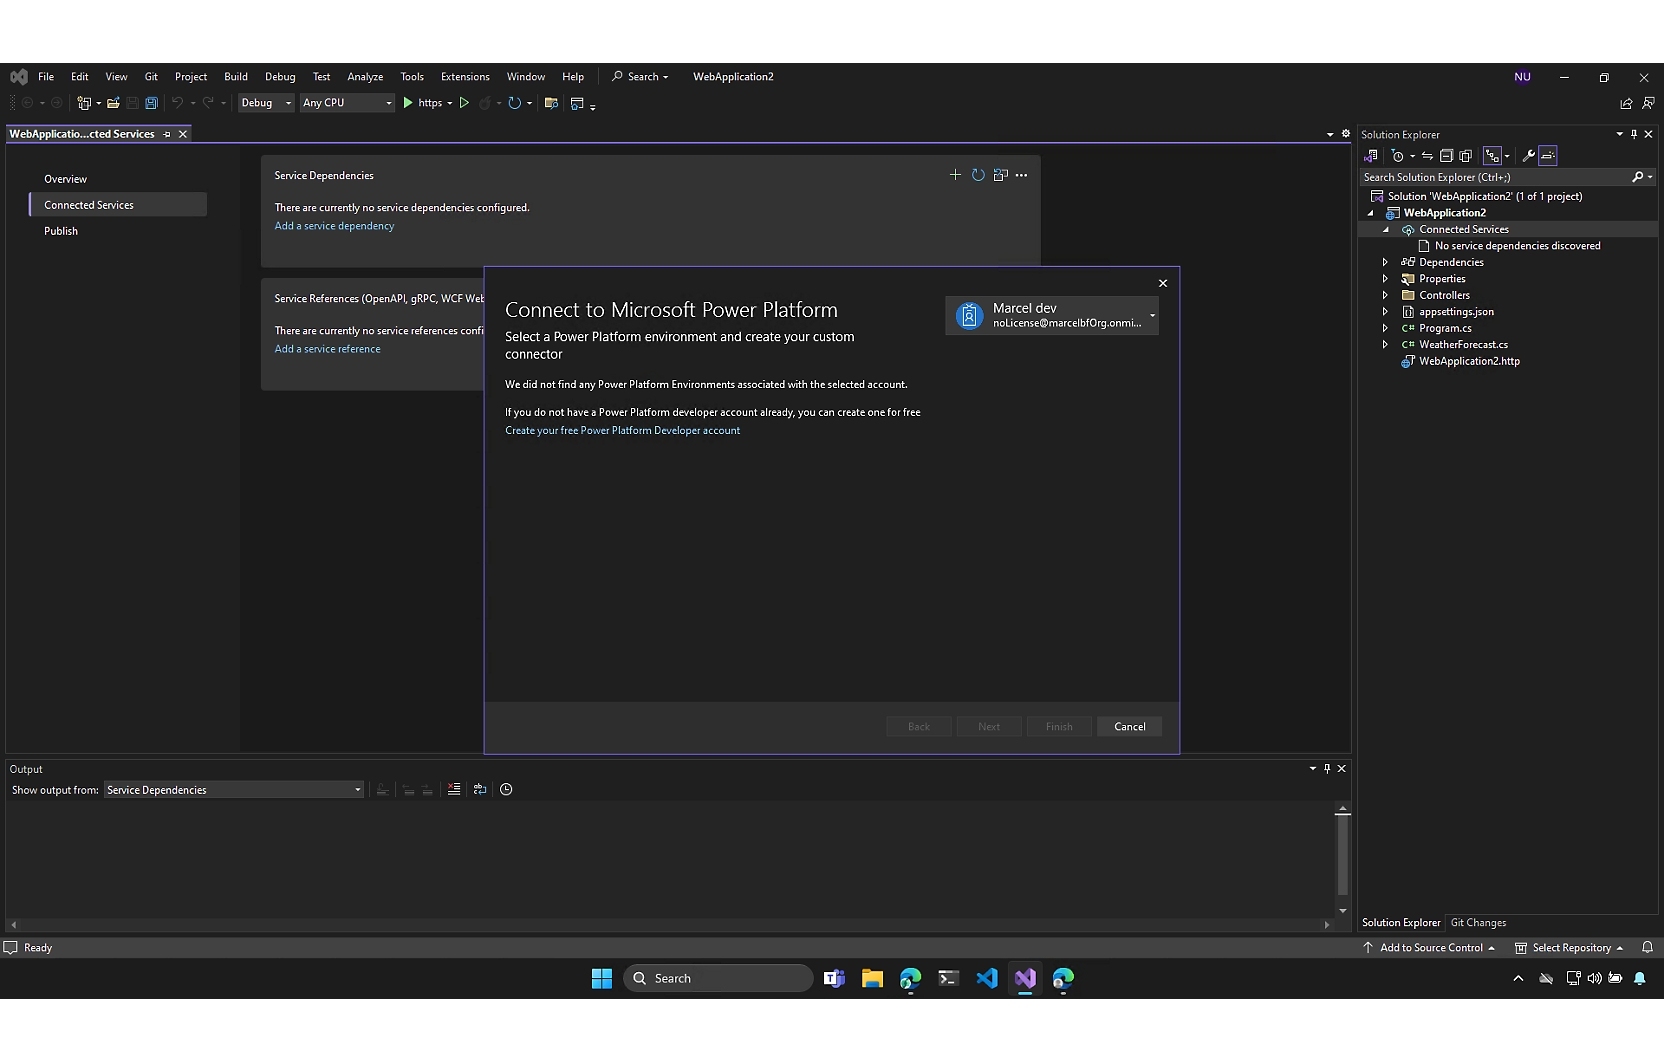 Et skærmbillede af Adobe Visual Studio Editor.